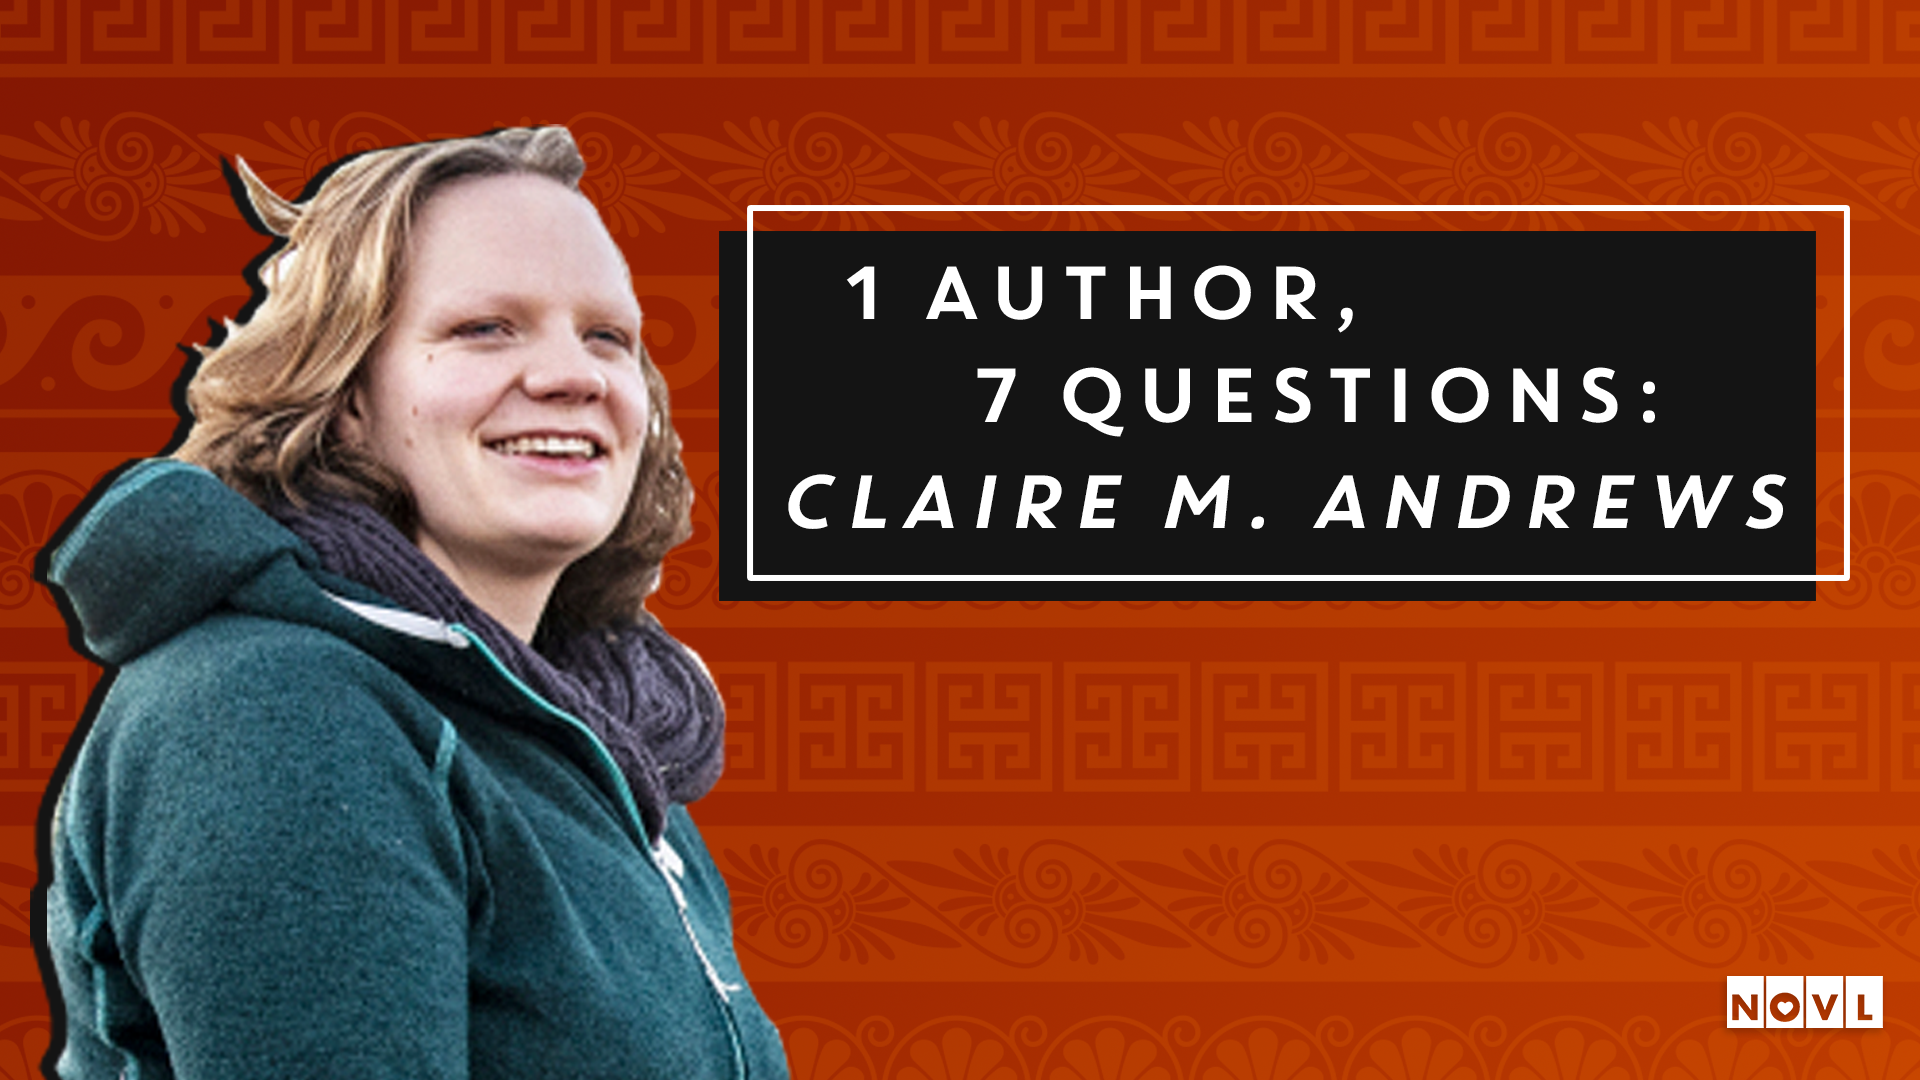 NOVL - 1 Author 7 Questions Claire M. Andrews